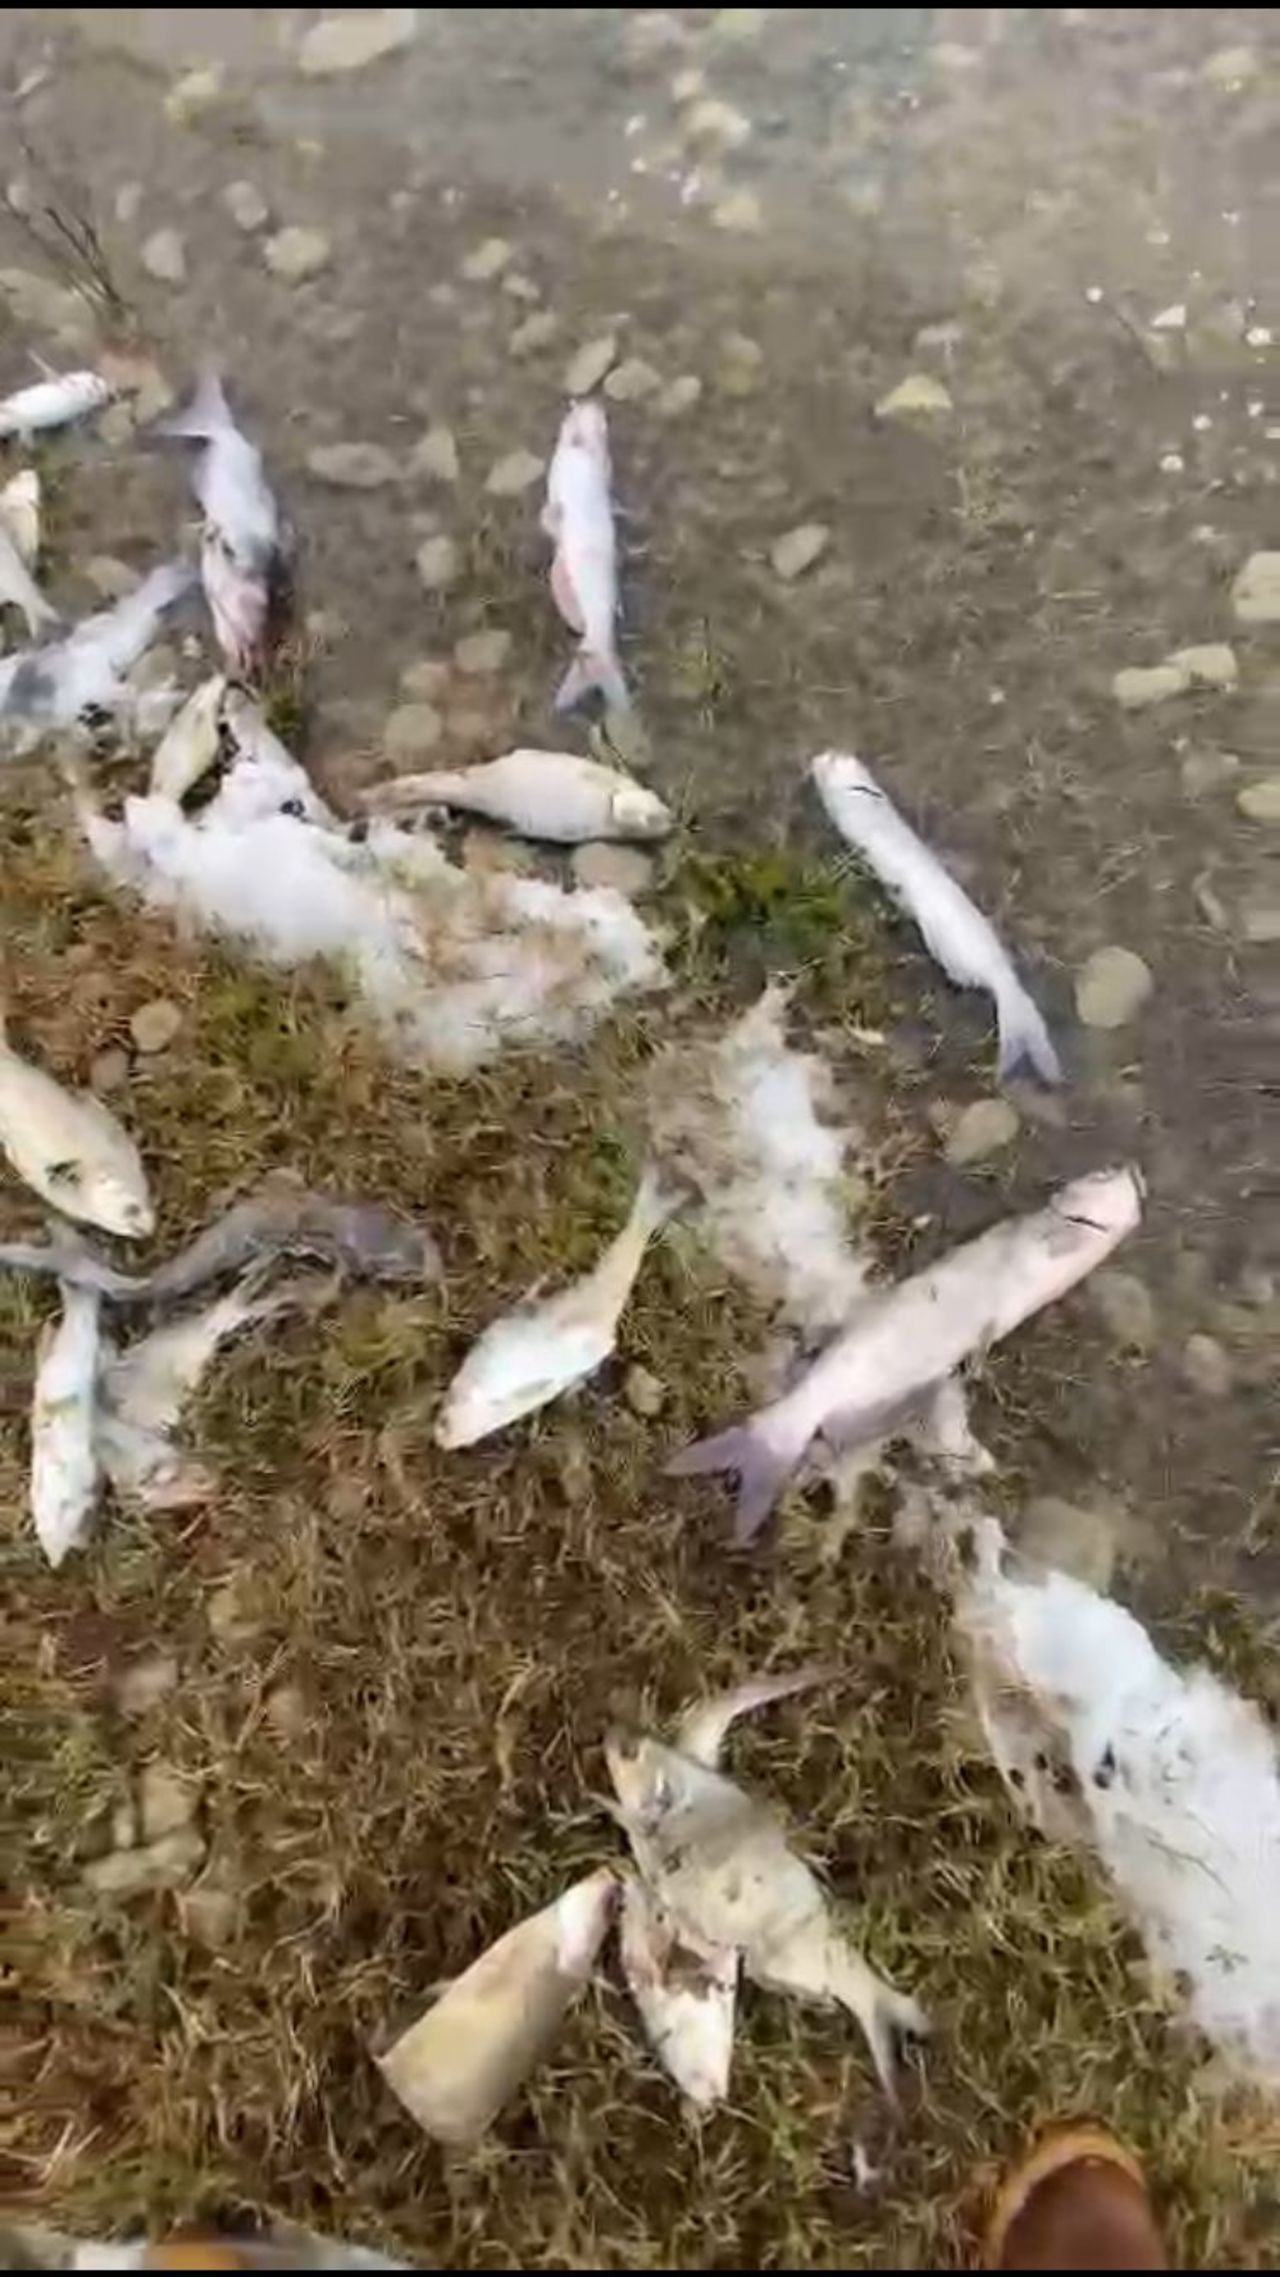 Durante el fin de semana, habitantes documentaron la muerte recurrente de peces en la laguna.